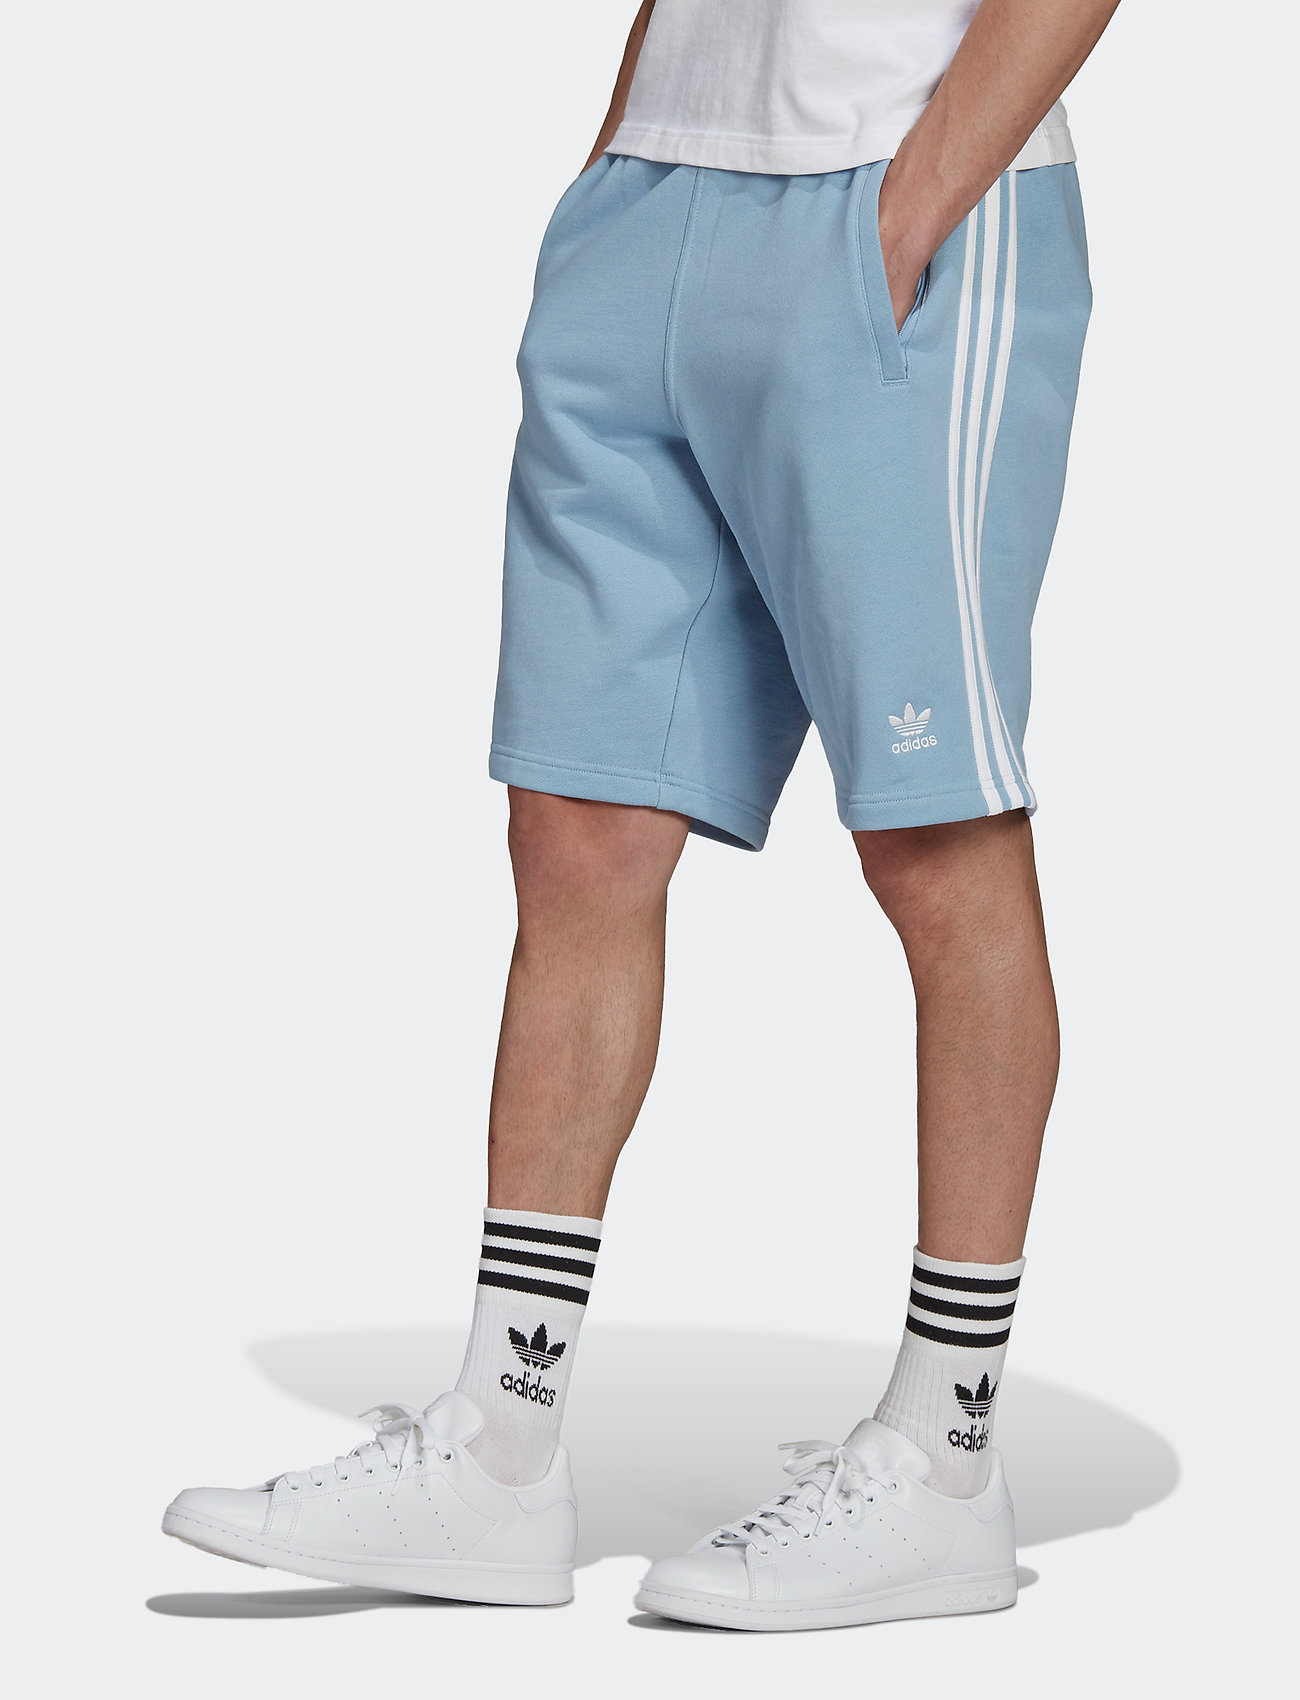 Originals шорты. Шорты adidas Originals 3 Stripes. Adidas Originals 03 shorts. Мужские шорты adicolor Classics 3-Stripes. Шорты адидас ориджинал мужские.